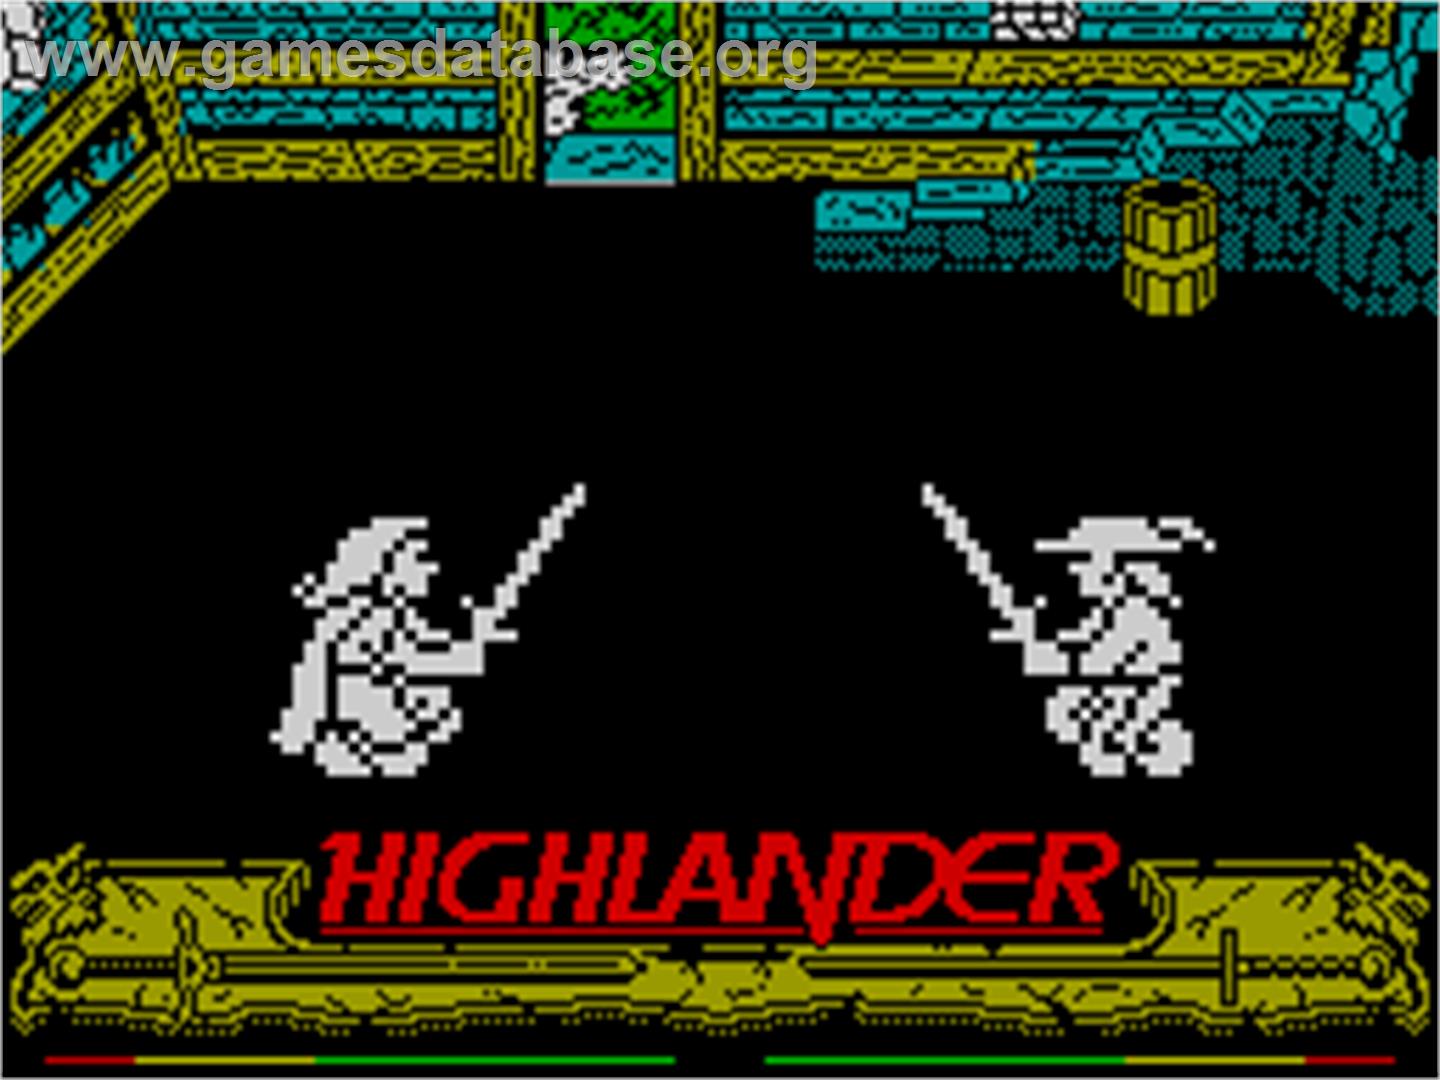 Highlander - Sinclair ZX Spectrum - Artwork - In Game